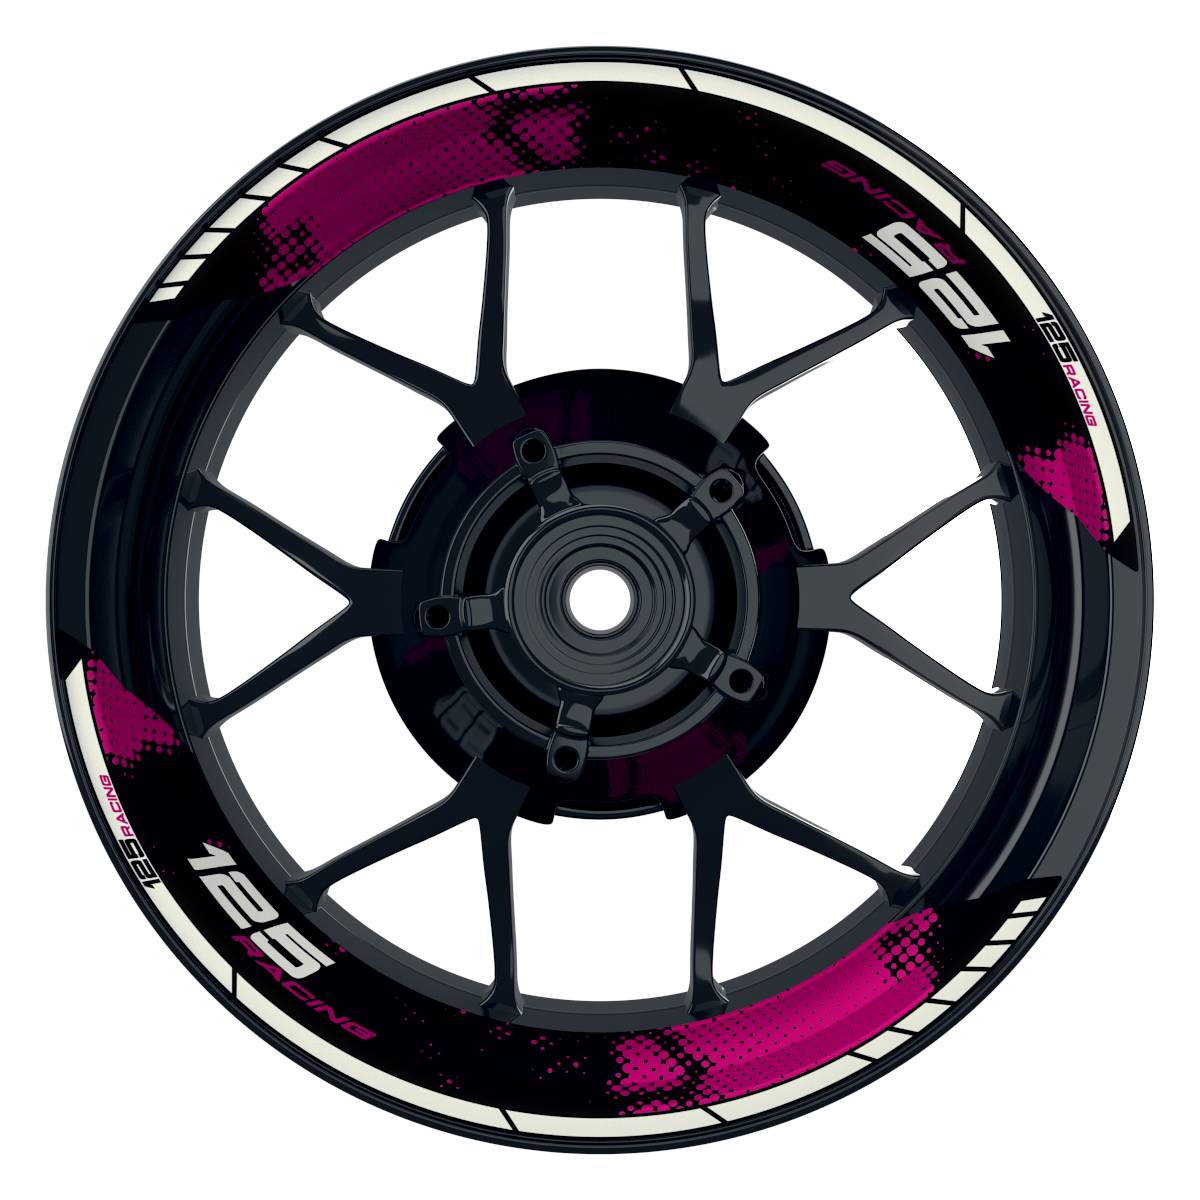 KTM Racing 125 Dots schwarz pink Frontansicht